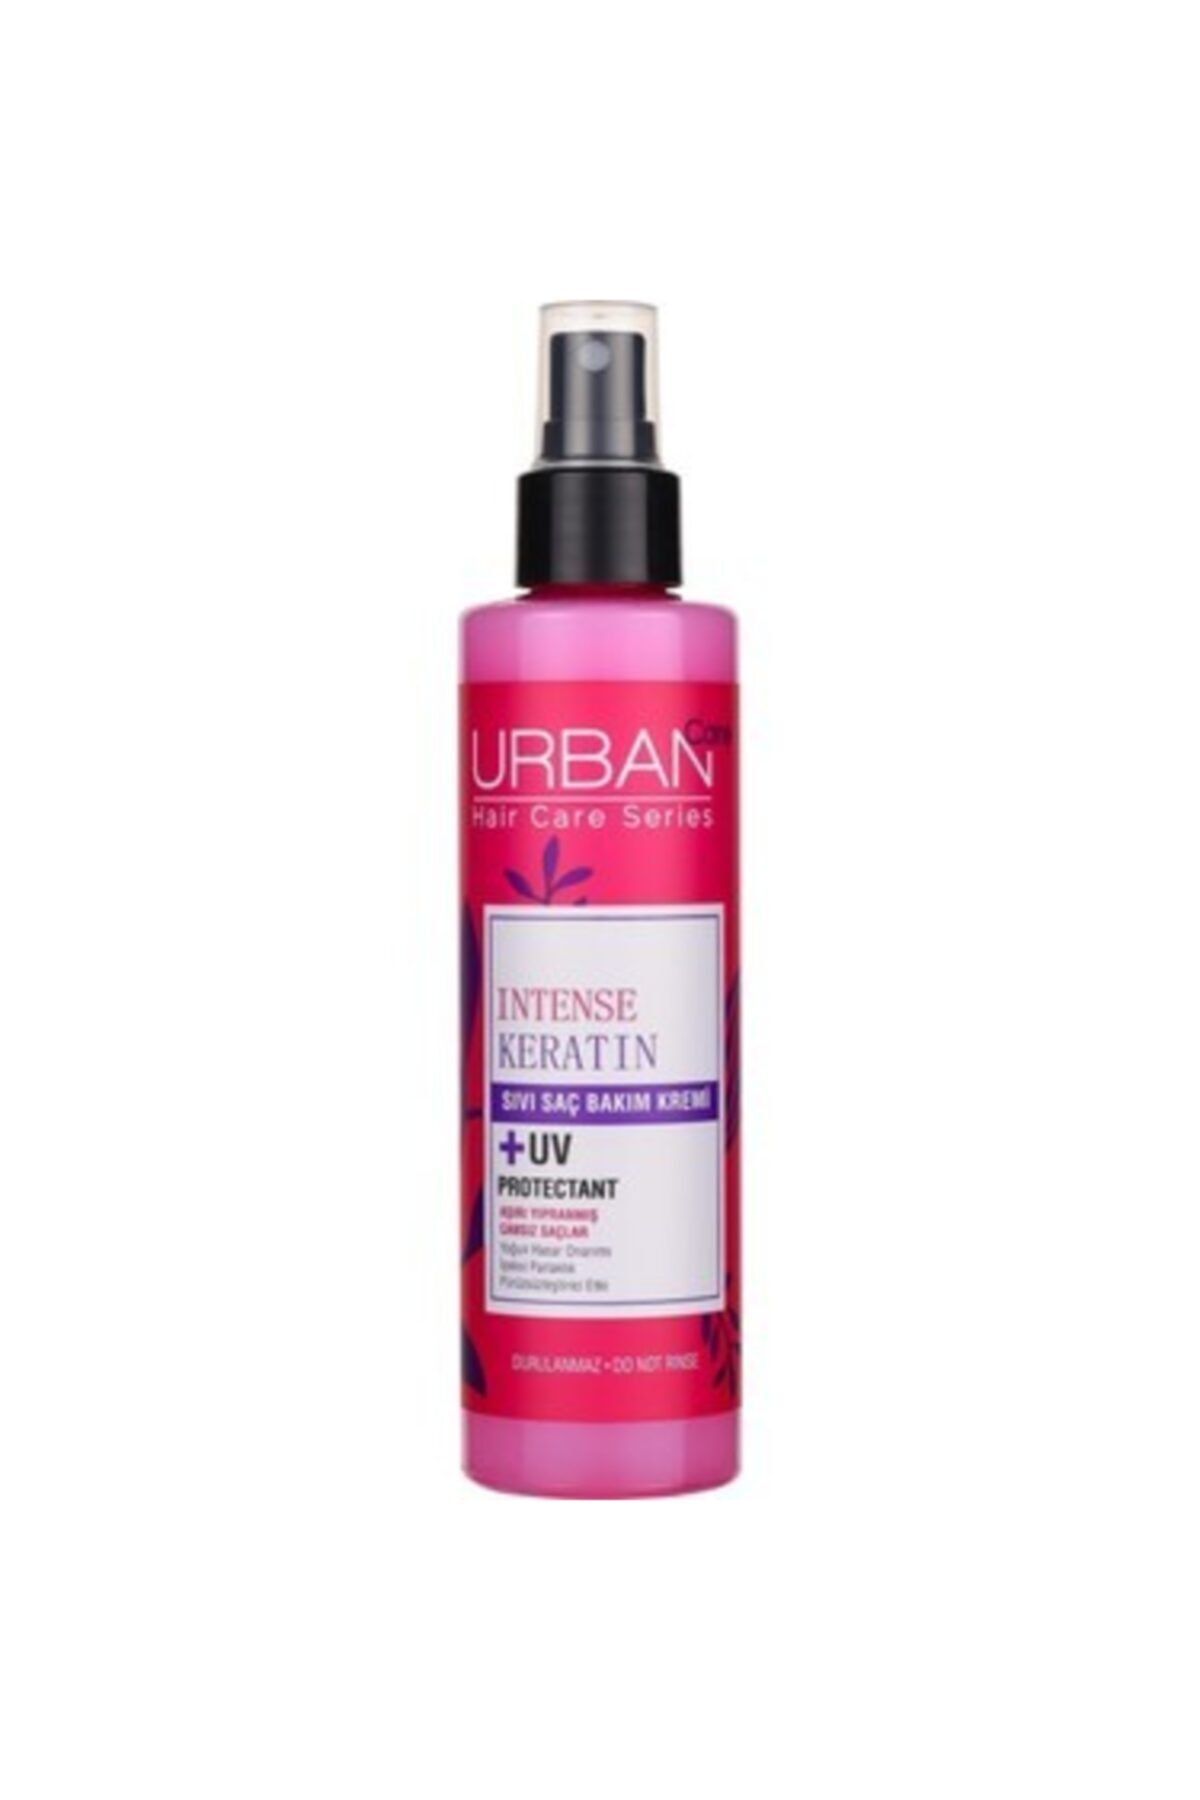 Urban Care مرطوب کننده موی مایع کراتین محصولات مراقبتی موی ارگانیک 200 میلی لیتر